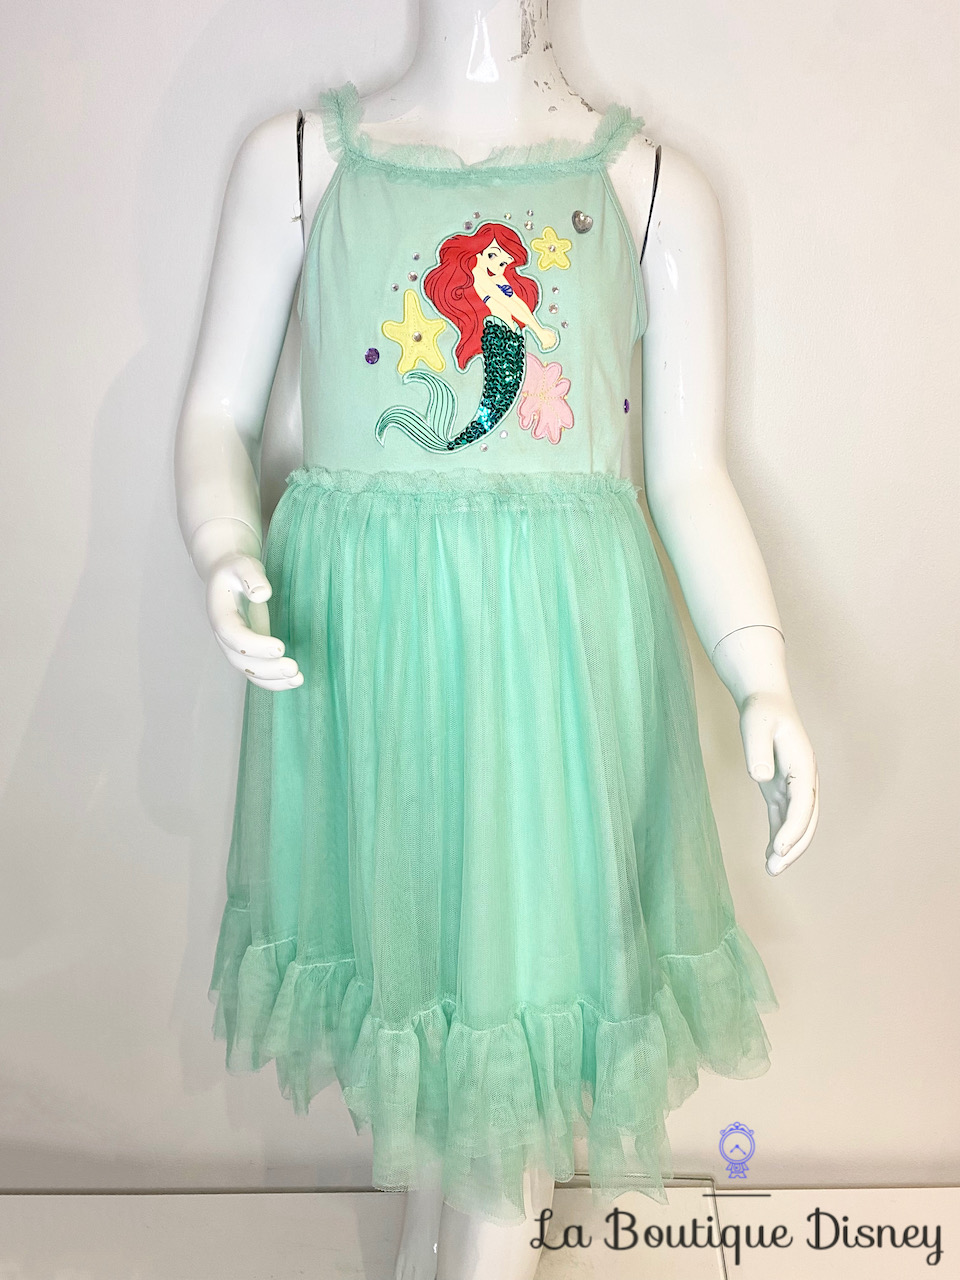 Robe Ariel La petite sirène Disney Store taille 7-8 ans déguisement vert menthe tulle sequin